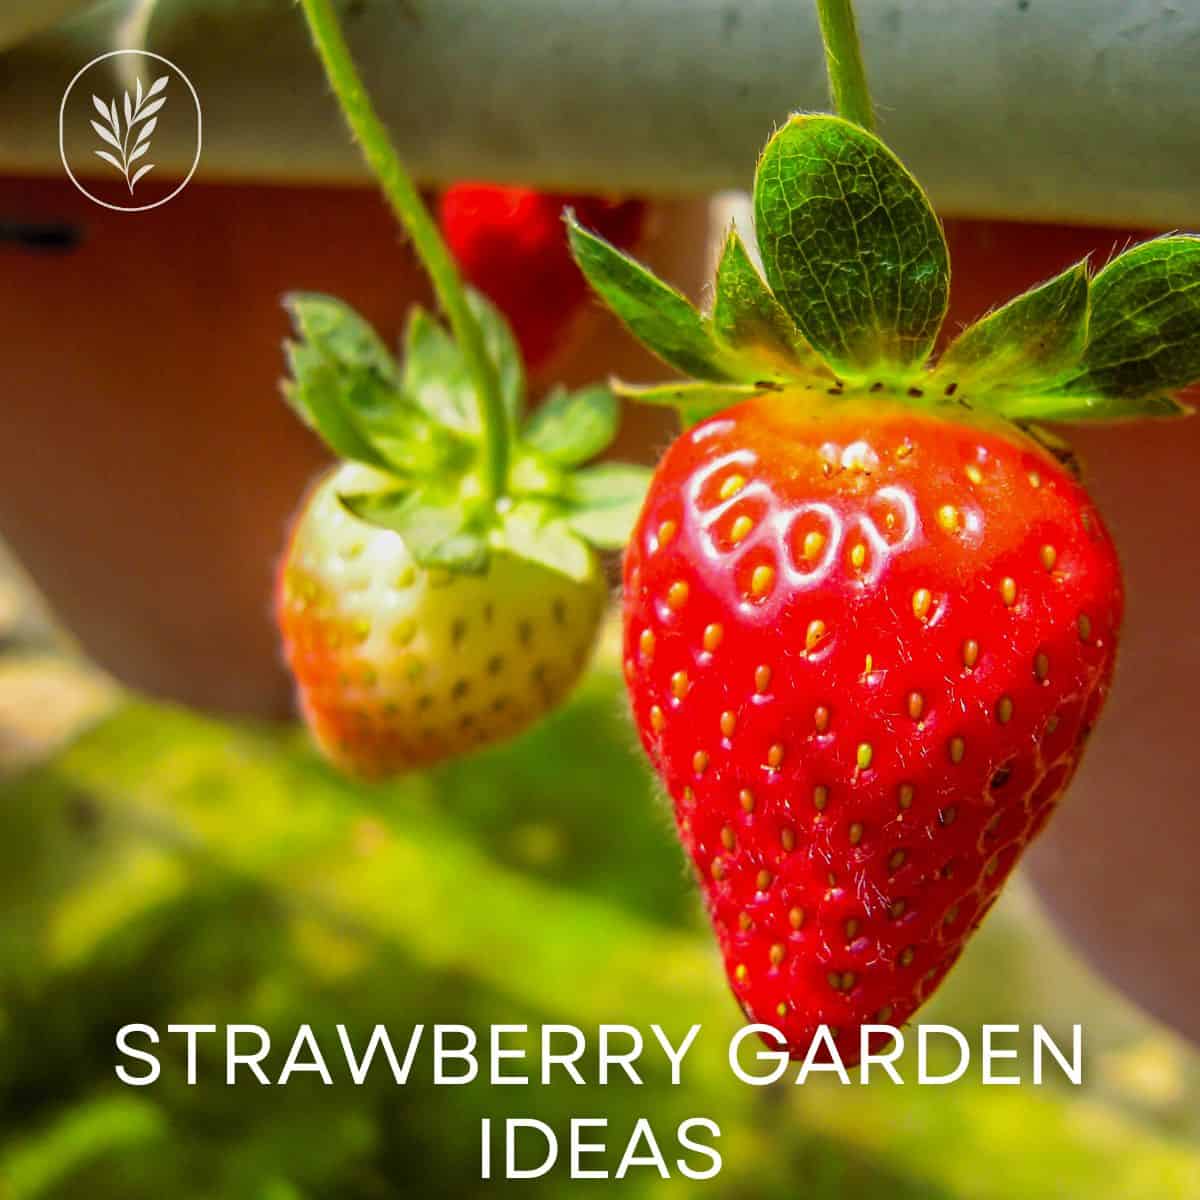 Strawberry garden ideas via @home4theharvest